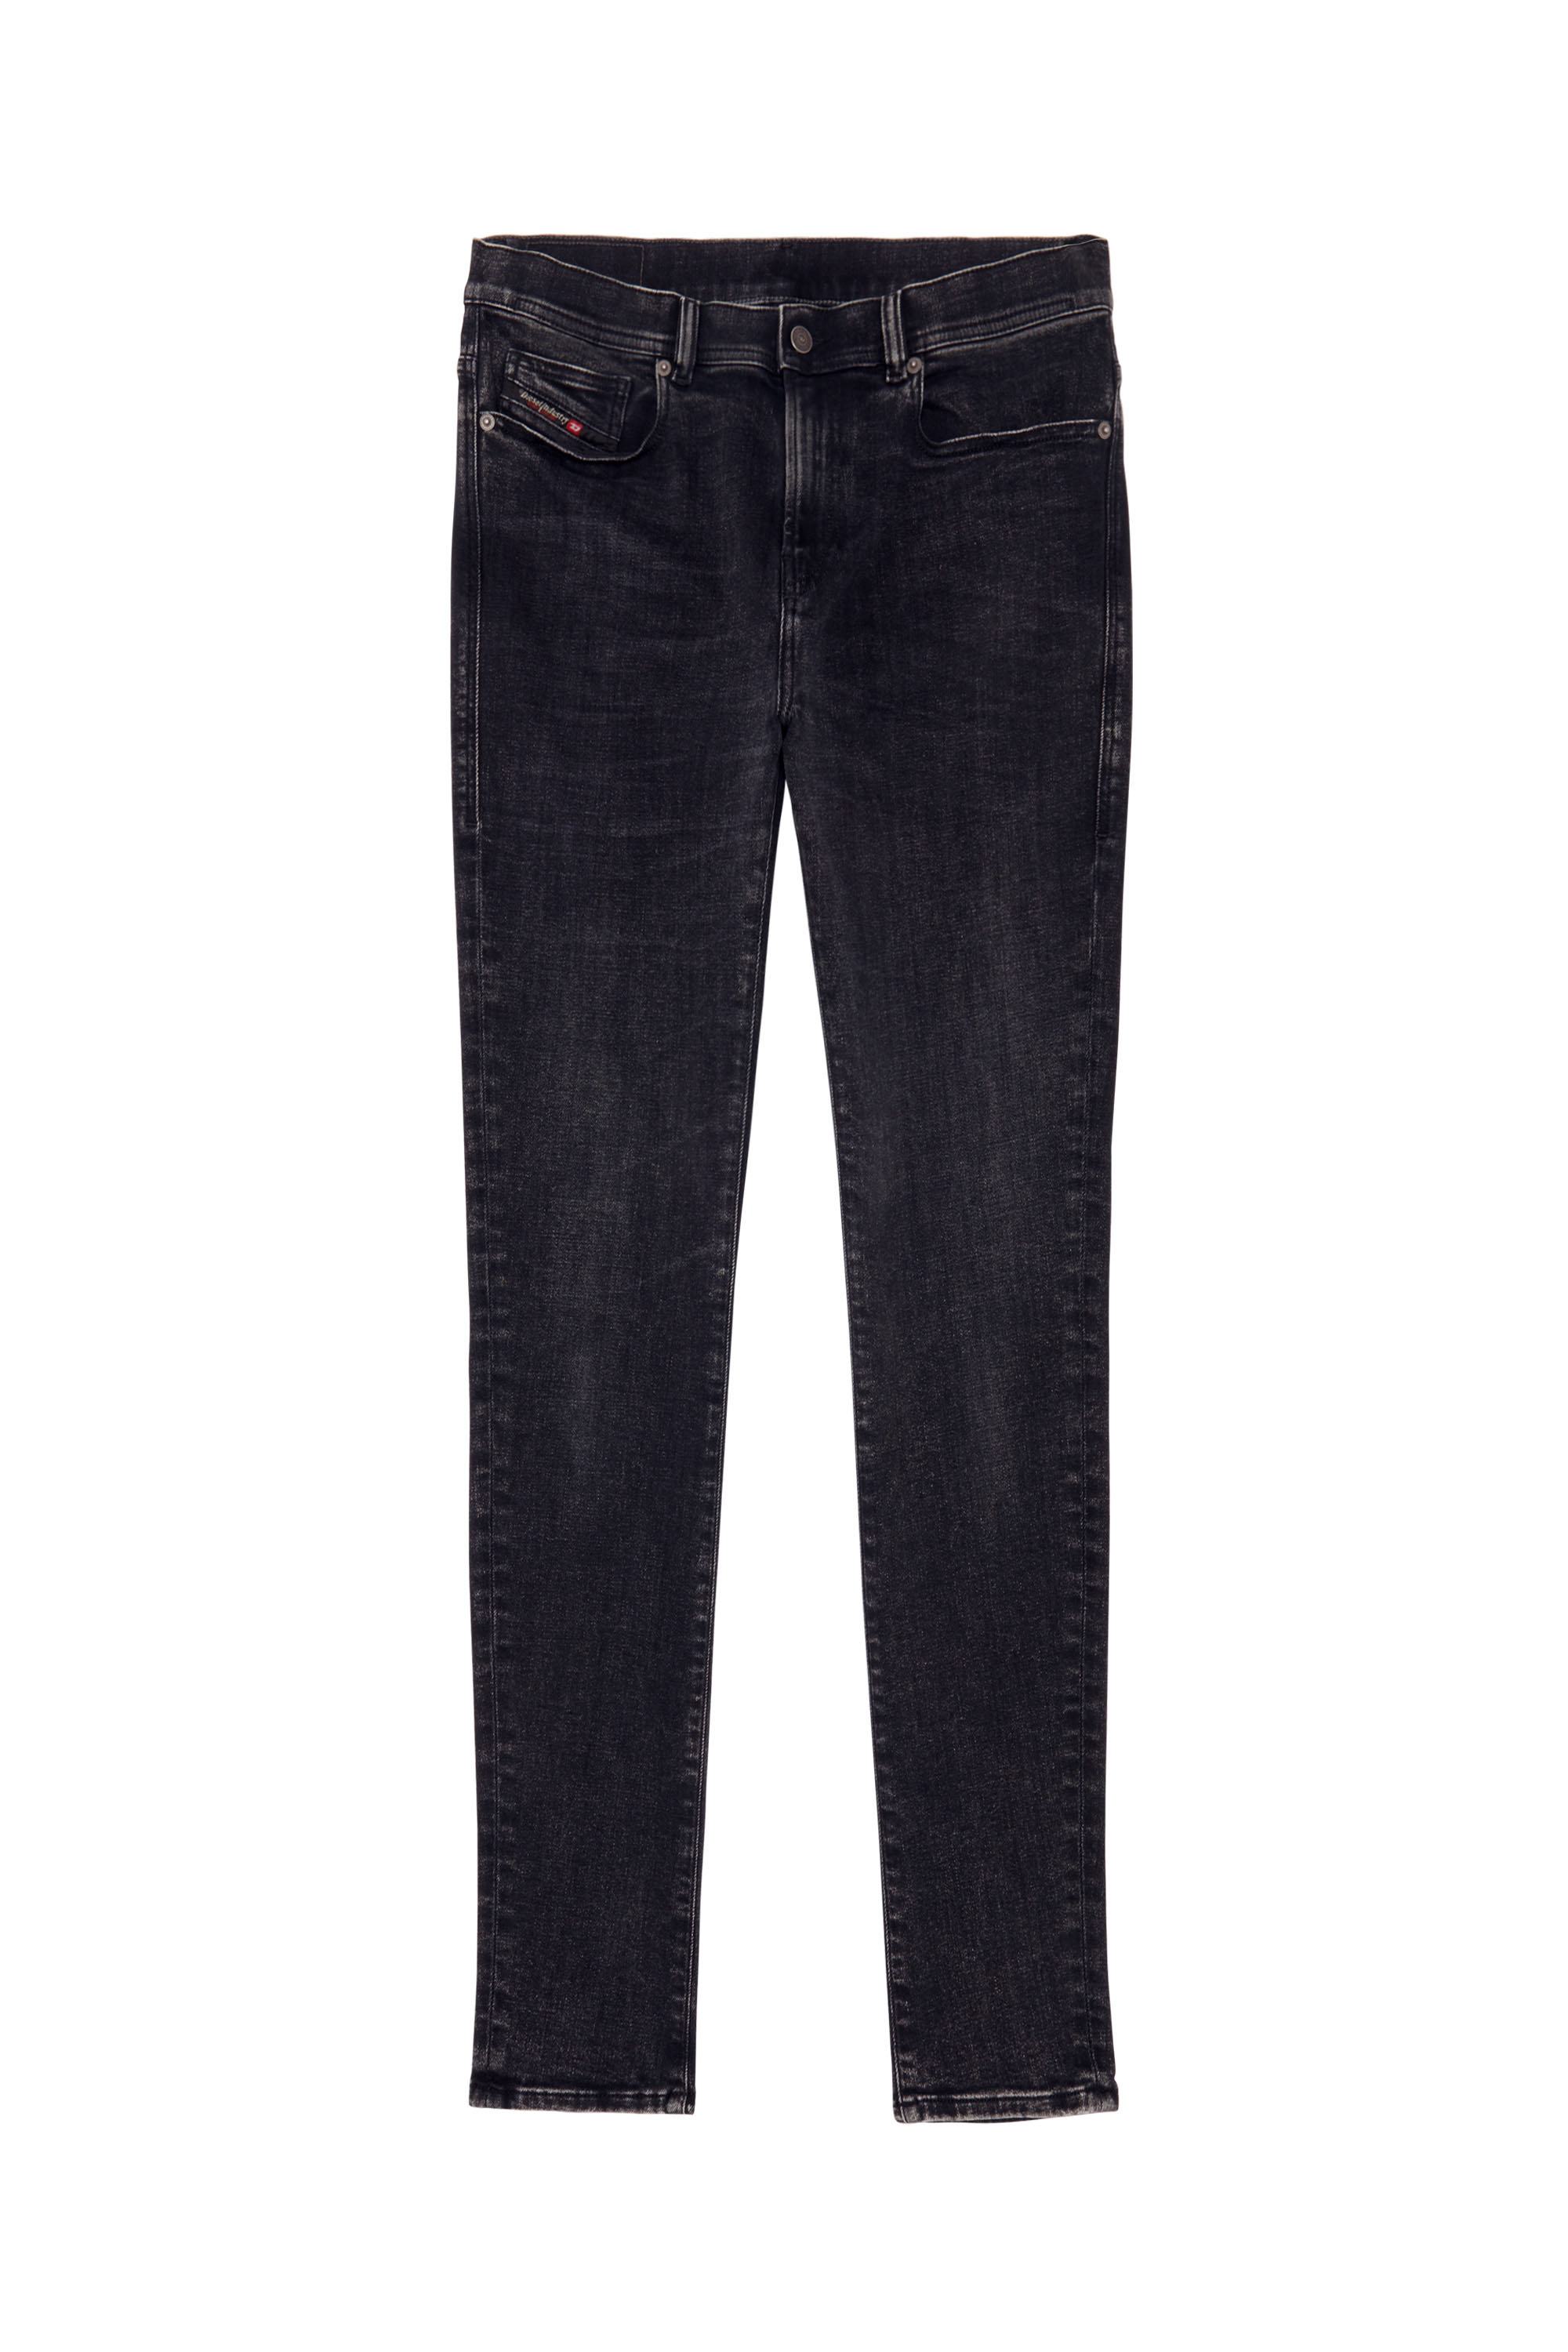 1983 D-Amny 09C23 Skinny Jeans, Black/Dark grey - Jeans